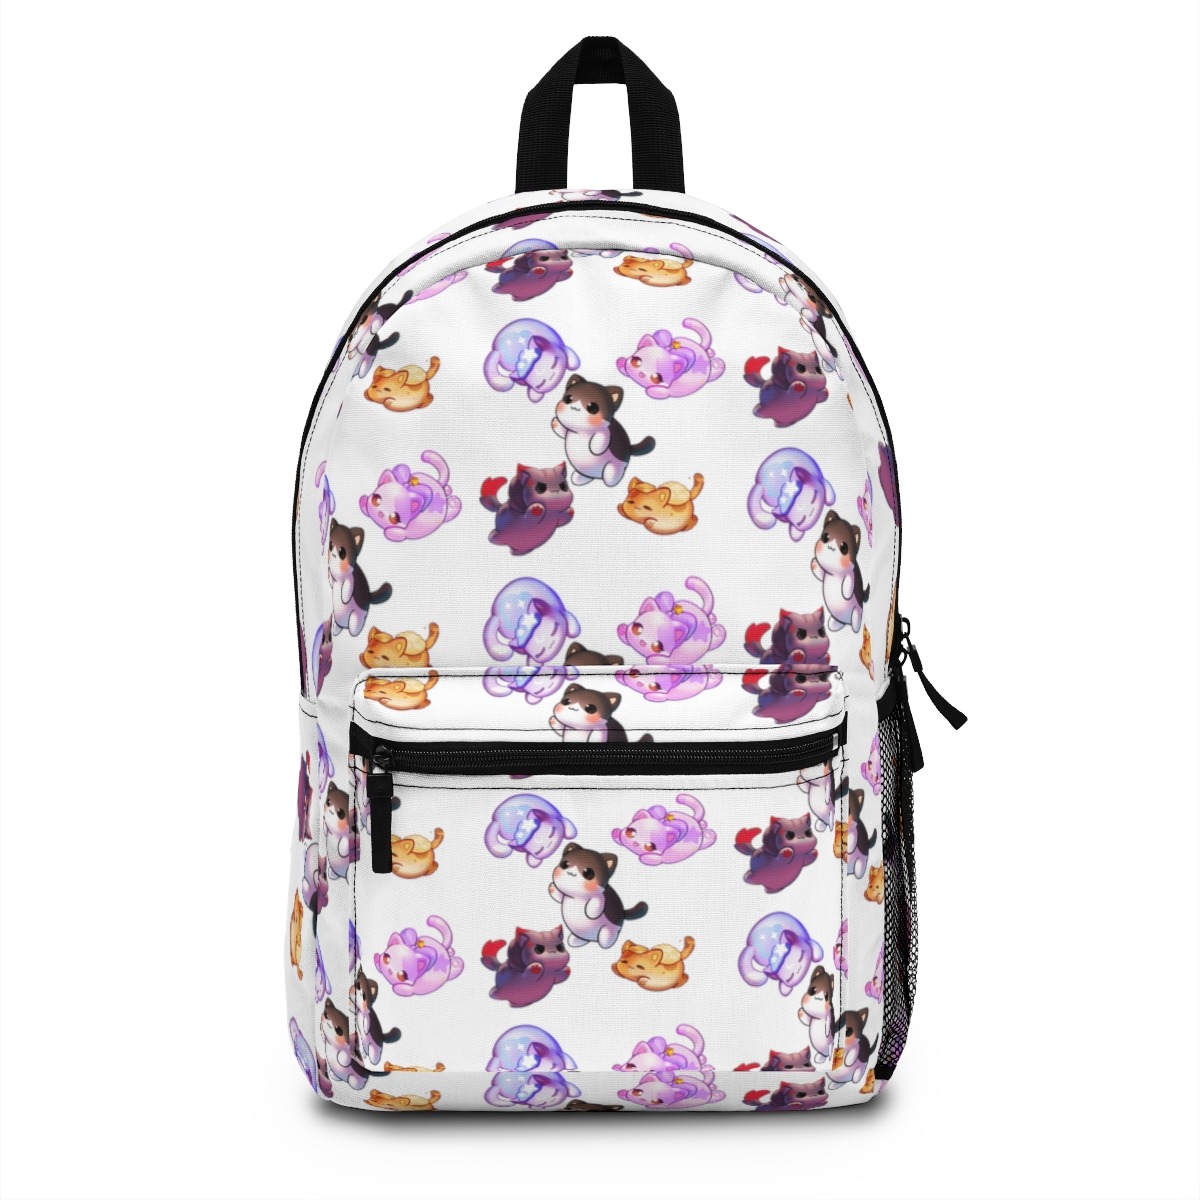 Aphmau Backpack, Custom Aphmau Backpack